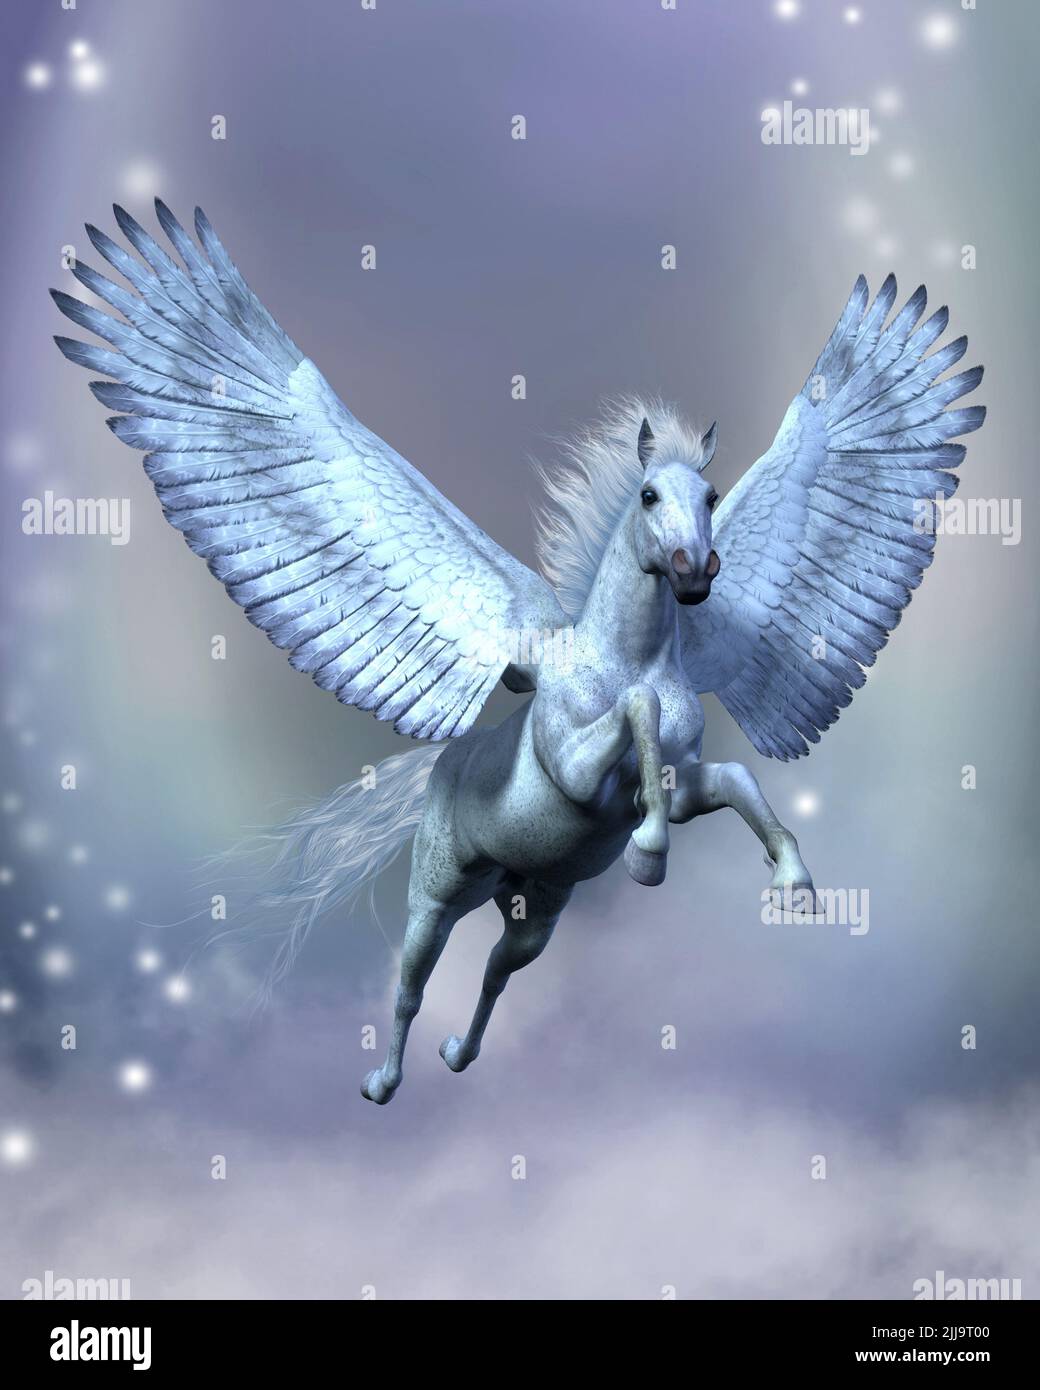 White Pegasus Fantasy - légendaire blanc Pegasus vole parmi des étoiles et des nuages moelleux sur des ailes robustes. Banque D'Images